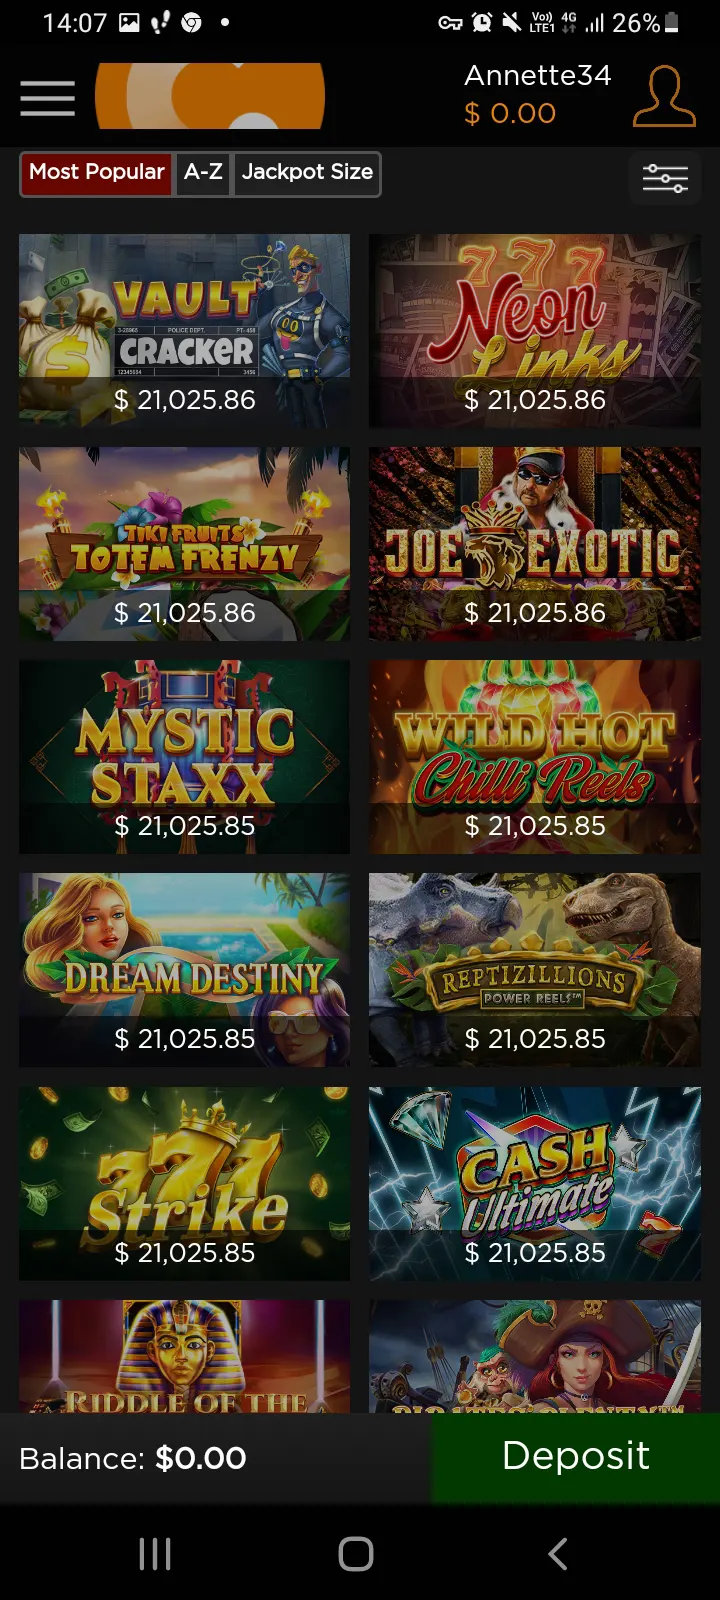 Casino.com app screenshot 6